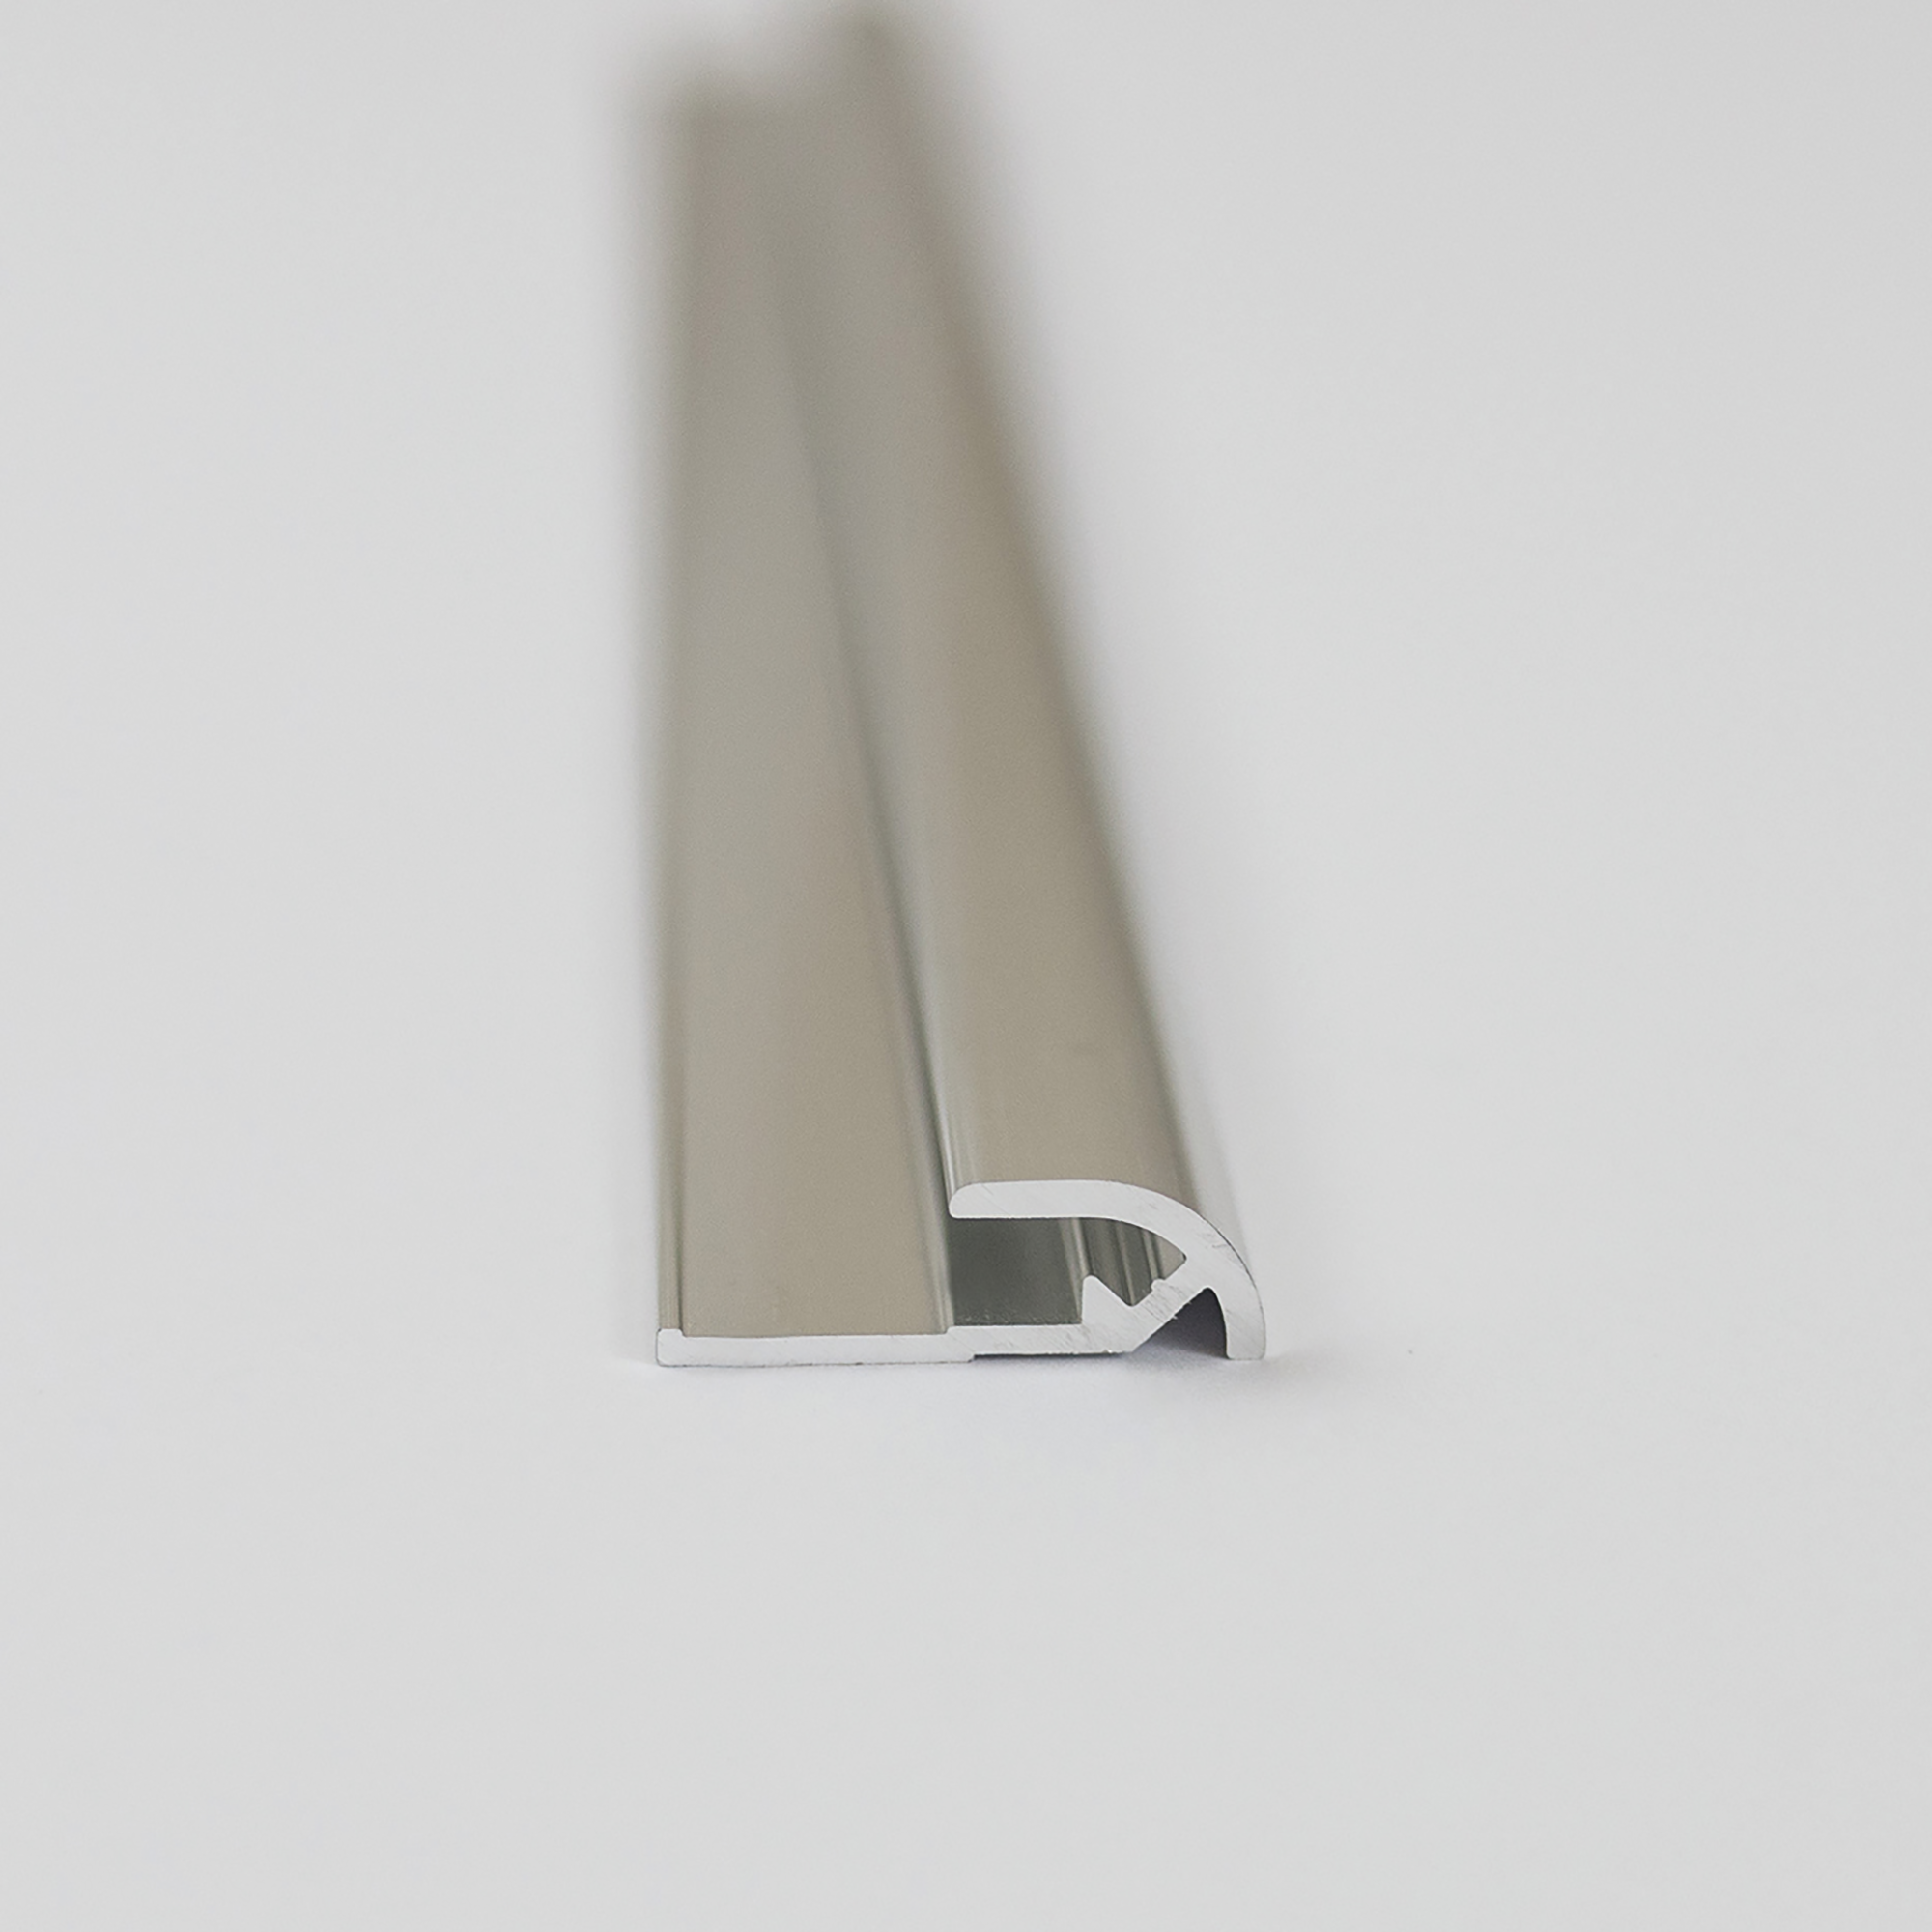 Abschlussprofil für Rückwandplatten, rund, alu chromeffekt, 2100 mm + product picture